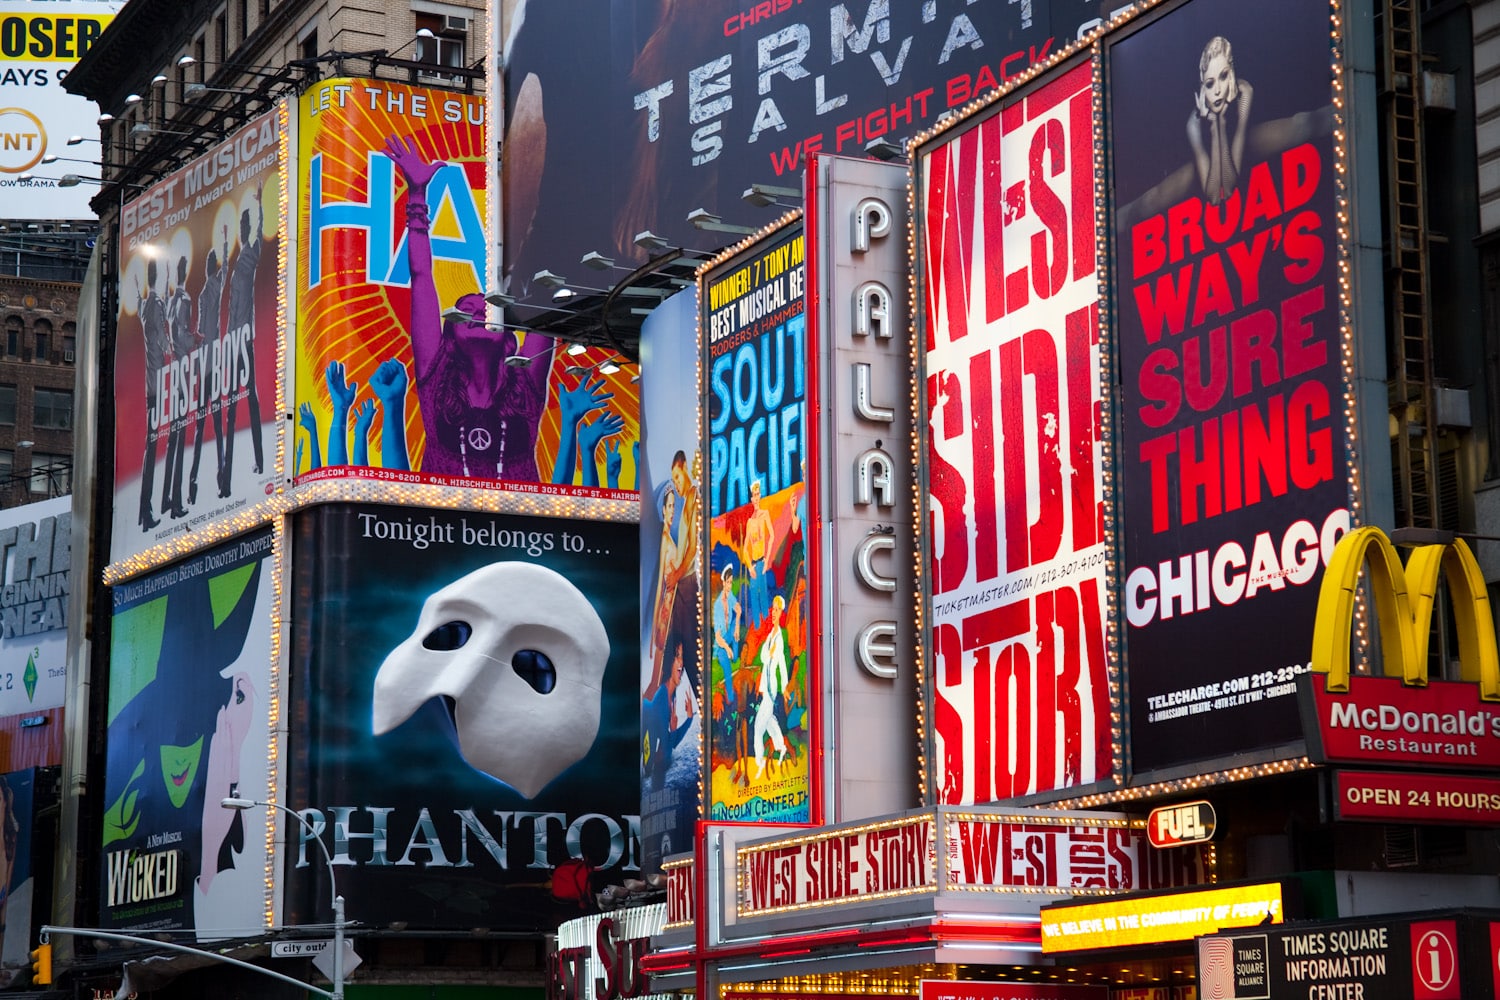 Melhores shows da Broadway em Nova York Nova York e Você